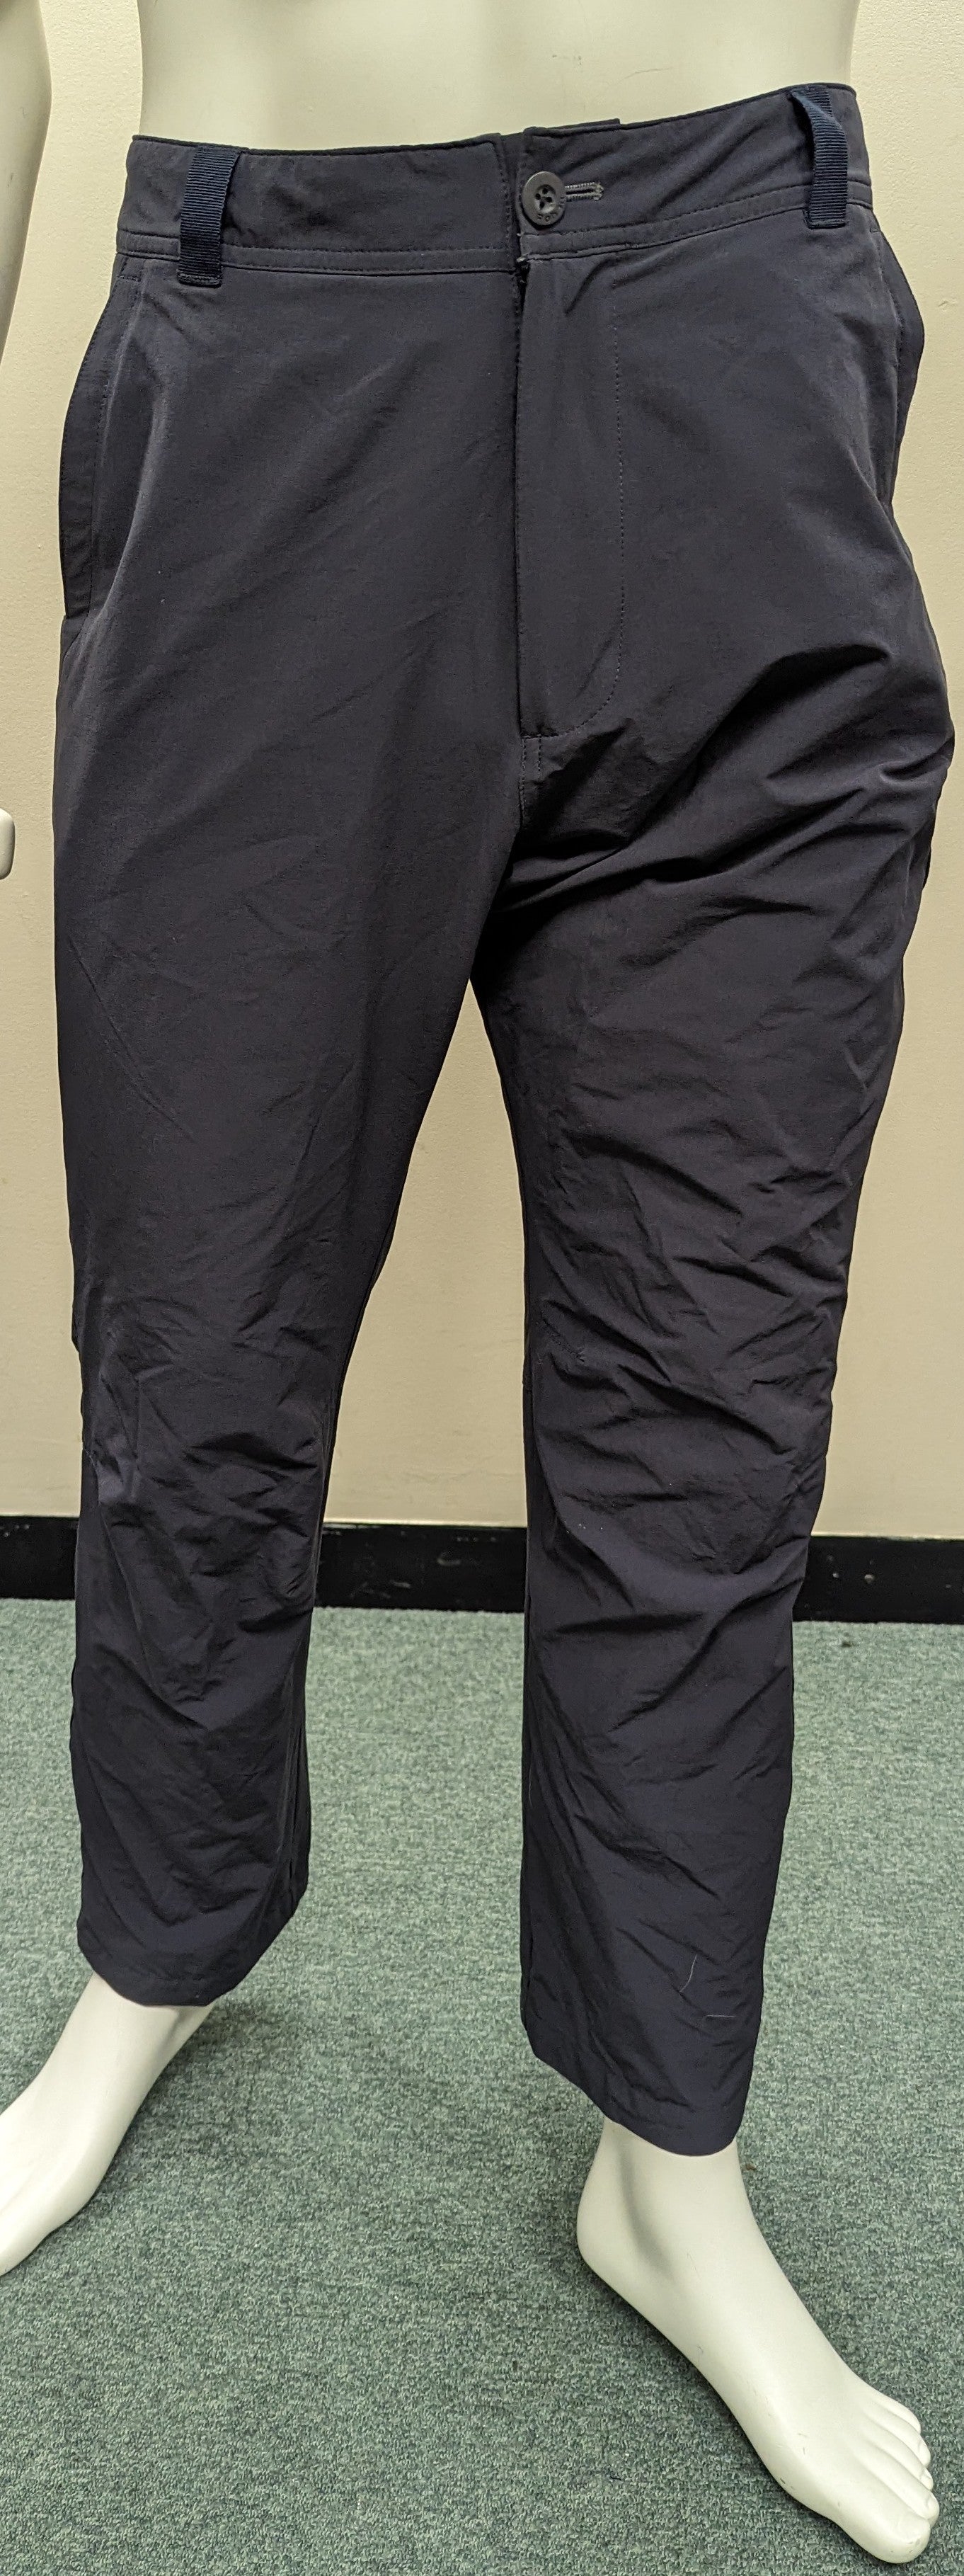 Men's Rohan Walking Trousers - Size 36R